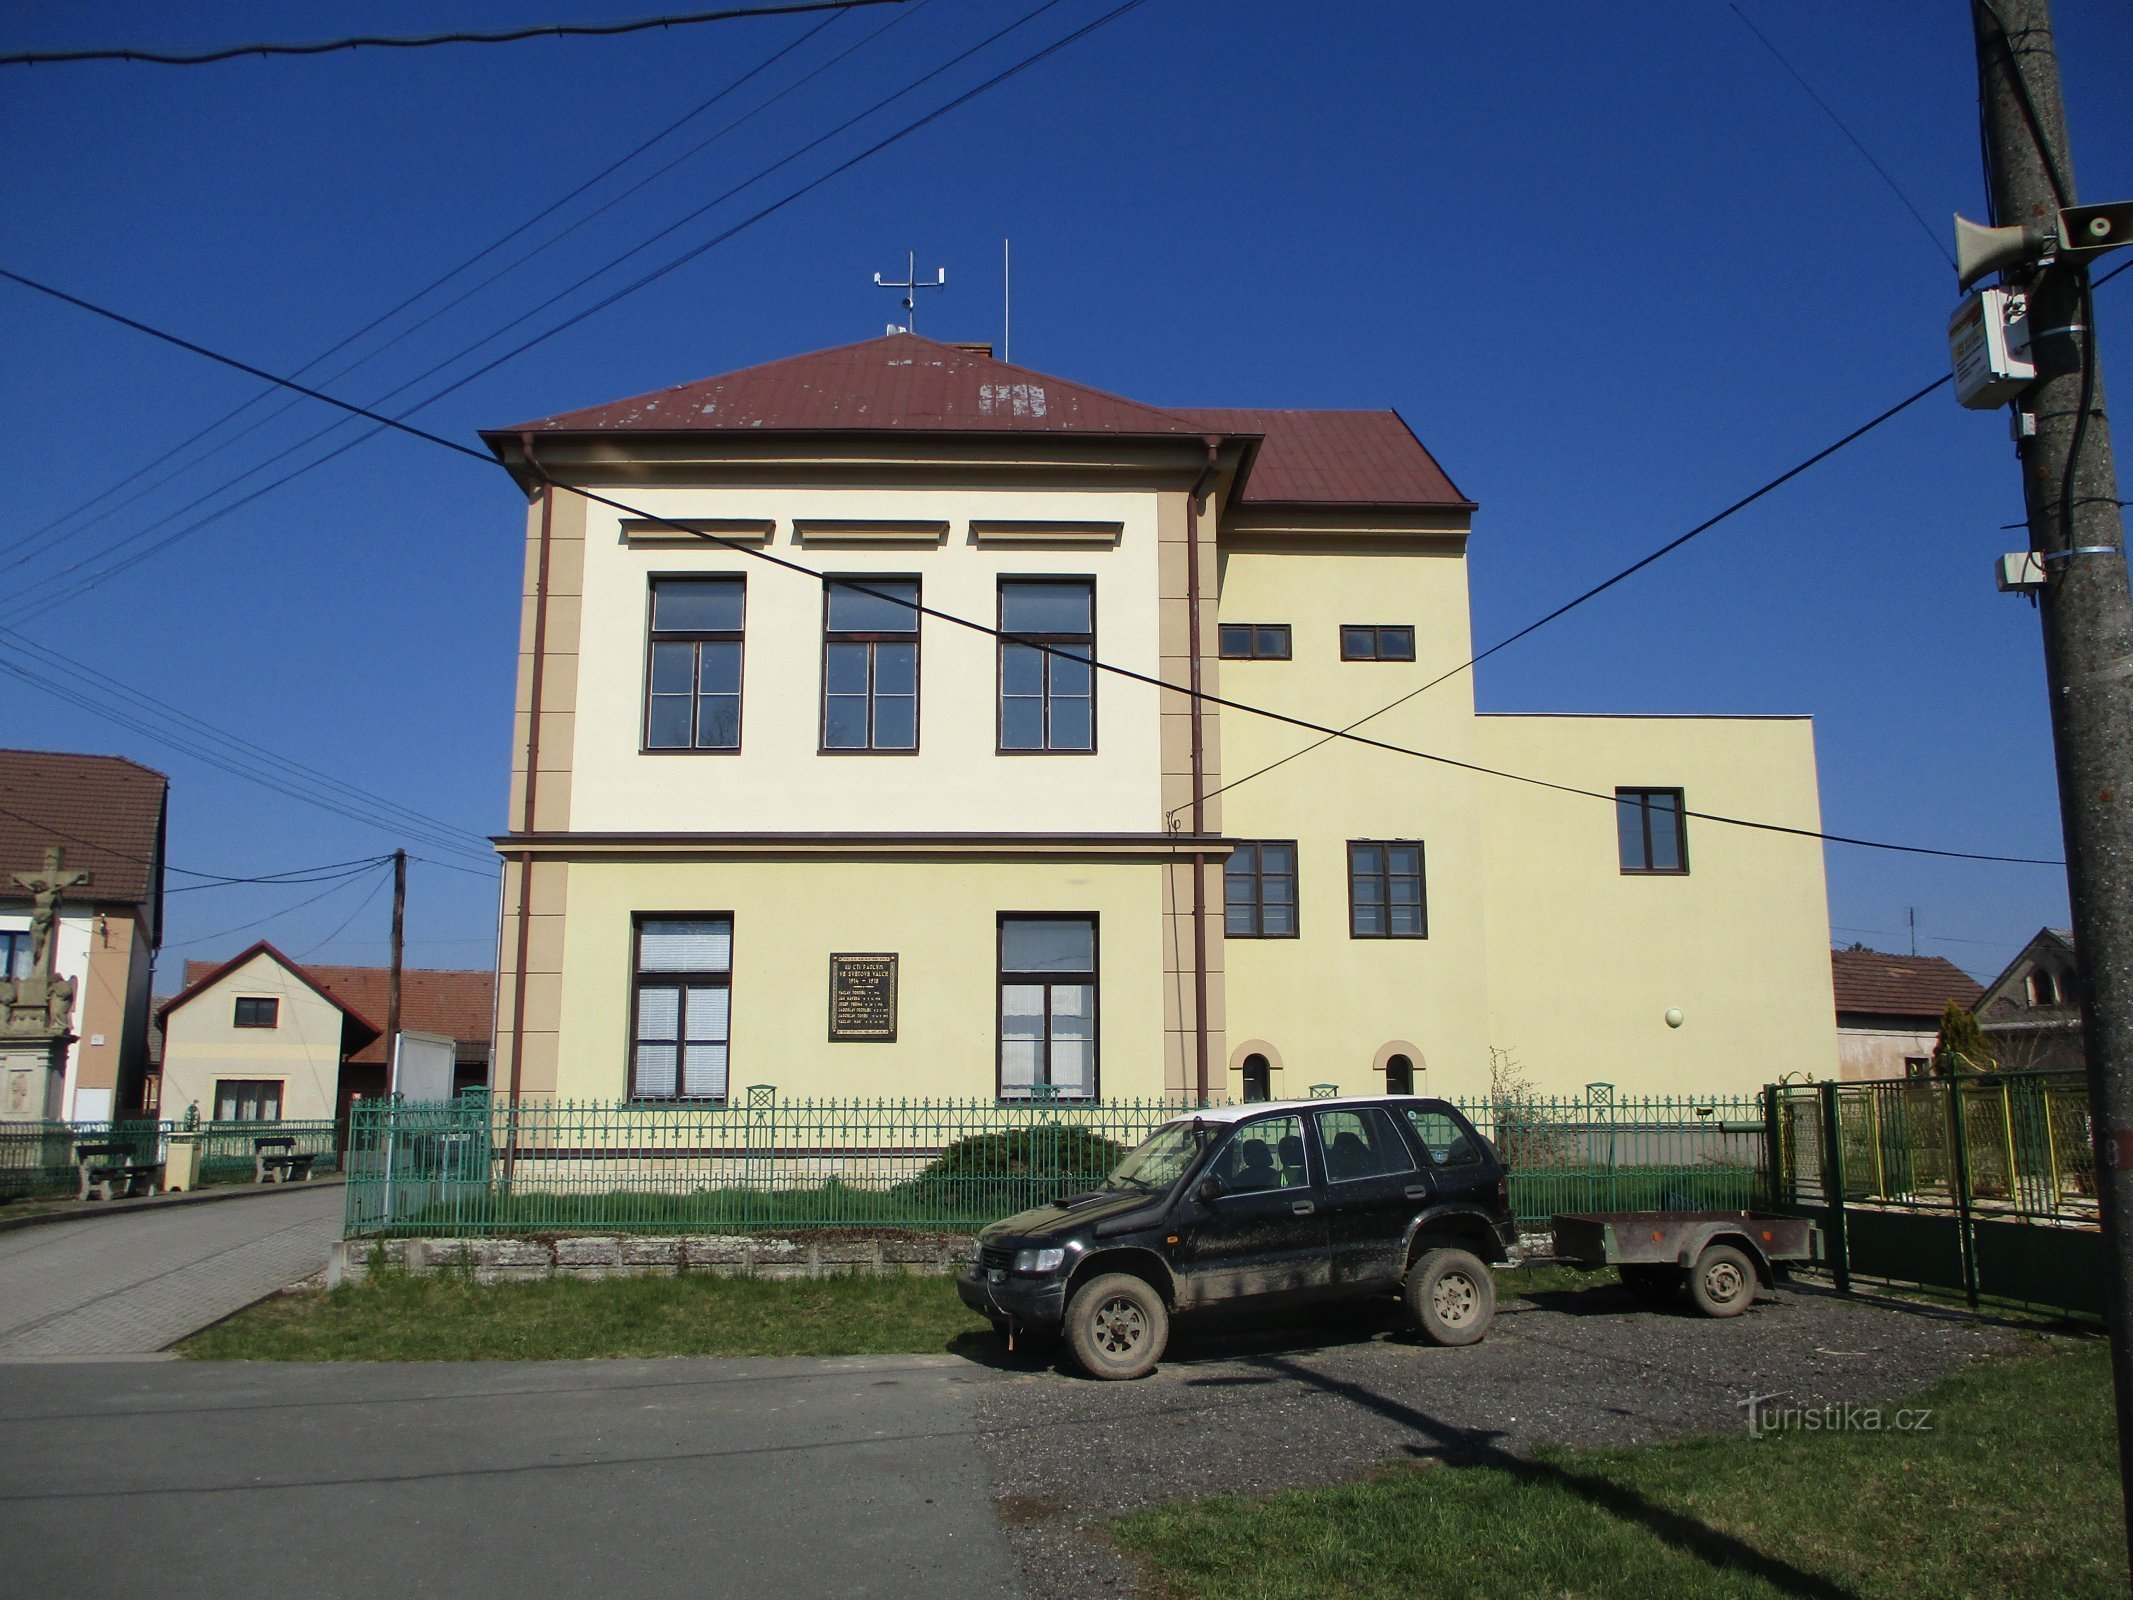 Szkoła z przedłużeniem (Račice nad Trotinou, 2.4.2020 kwietnia XNUMX)